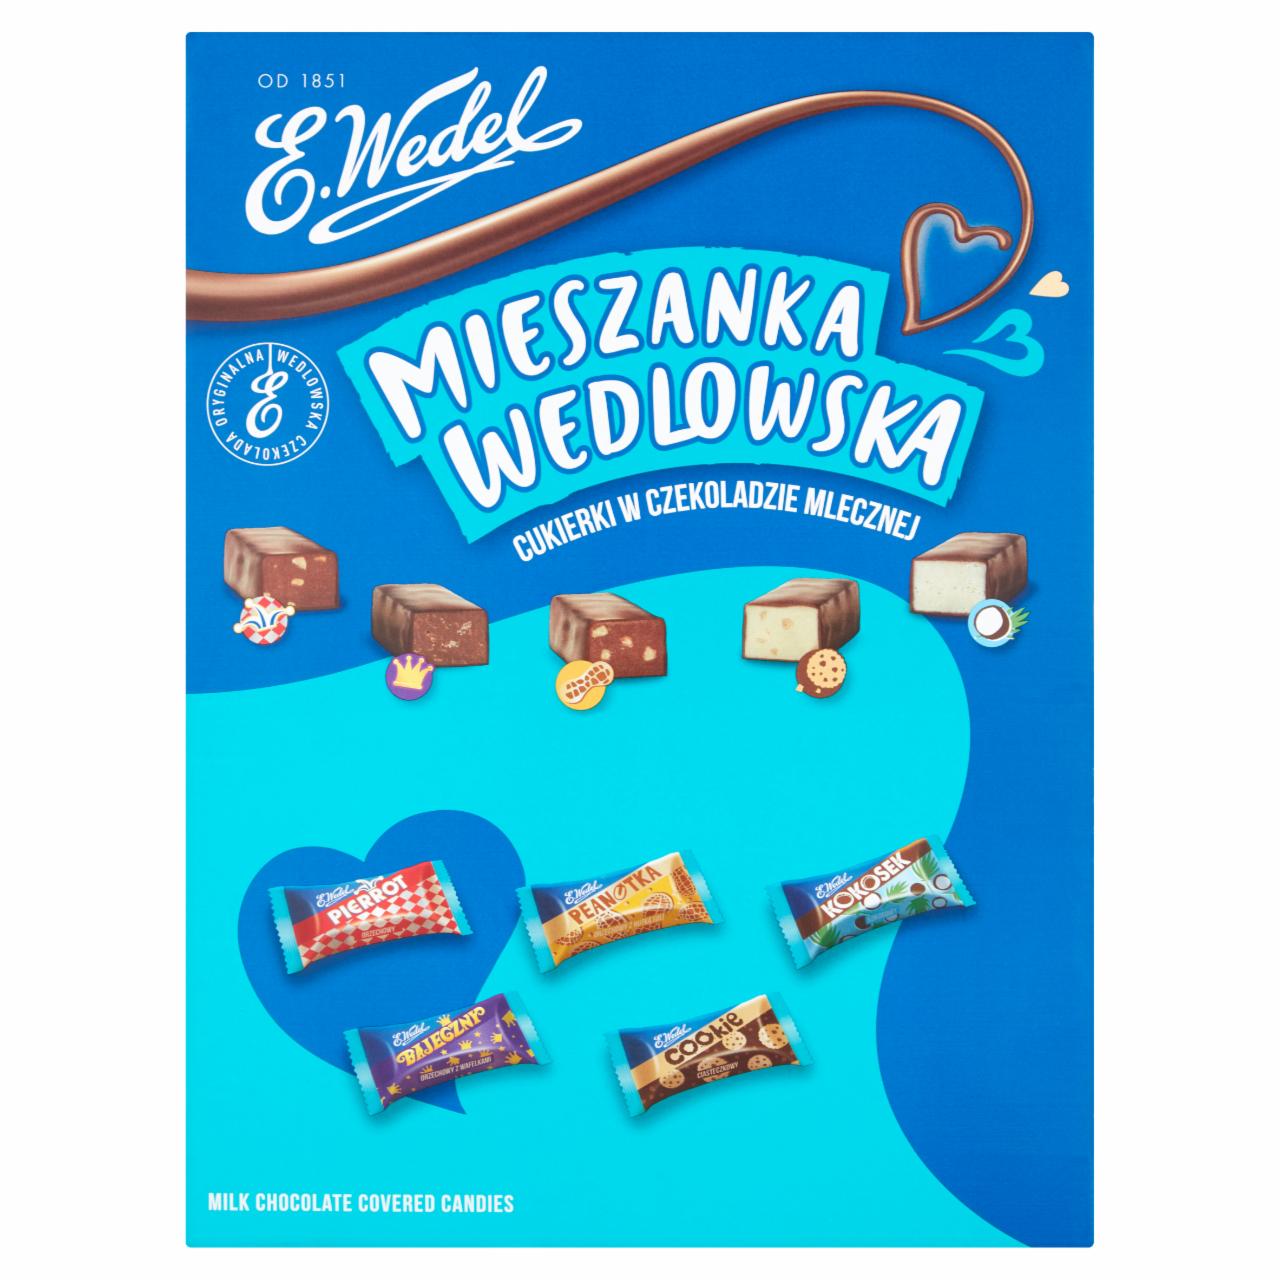 Zdjęcia - E. Wedel Mieszanka Wedlowska Cukierki w czekoladzie mlecznej 3 kg